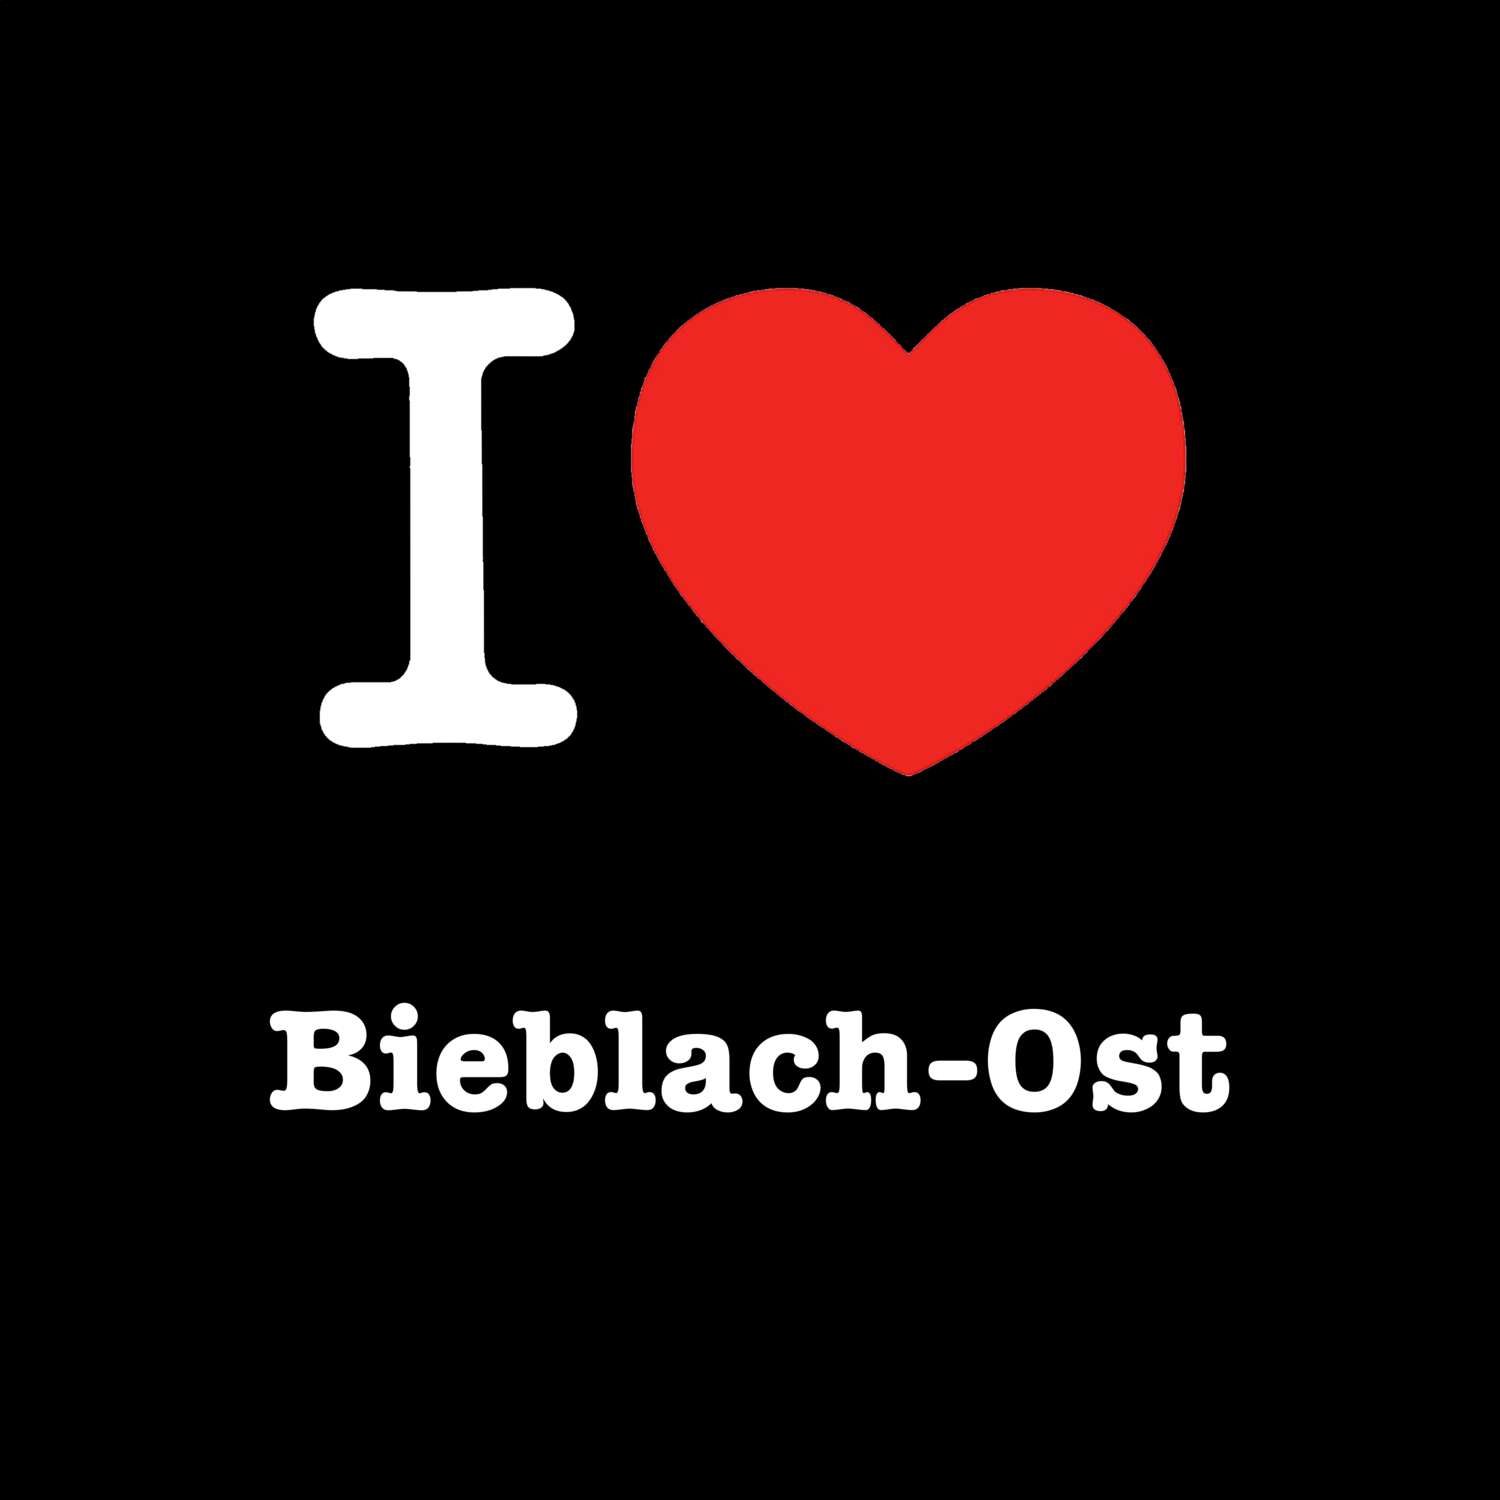 Bieblach-Ost T-Shirt »I love«